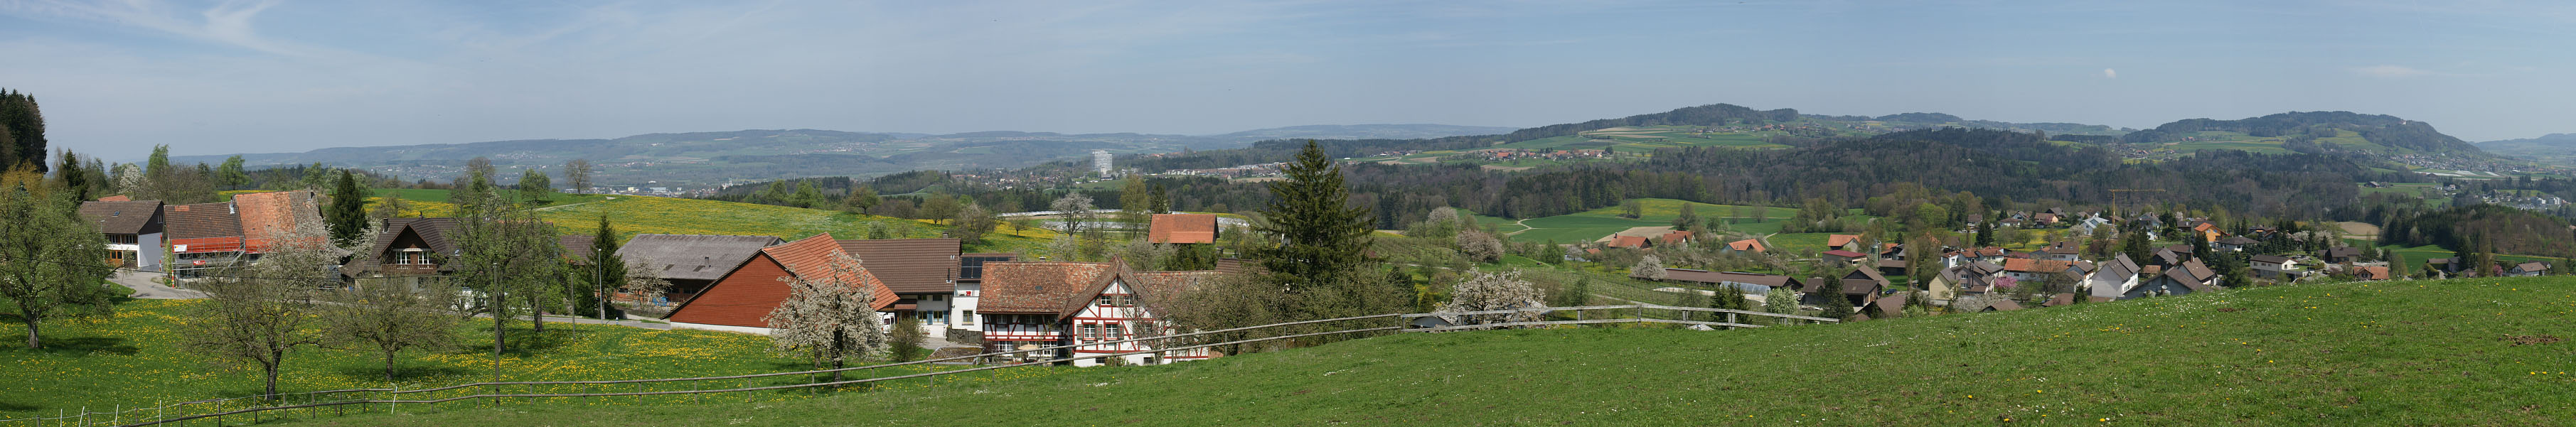 Warth-Weiningen